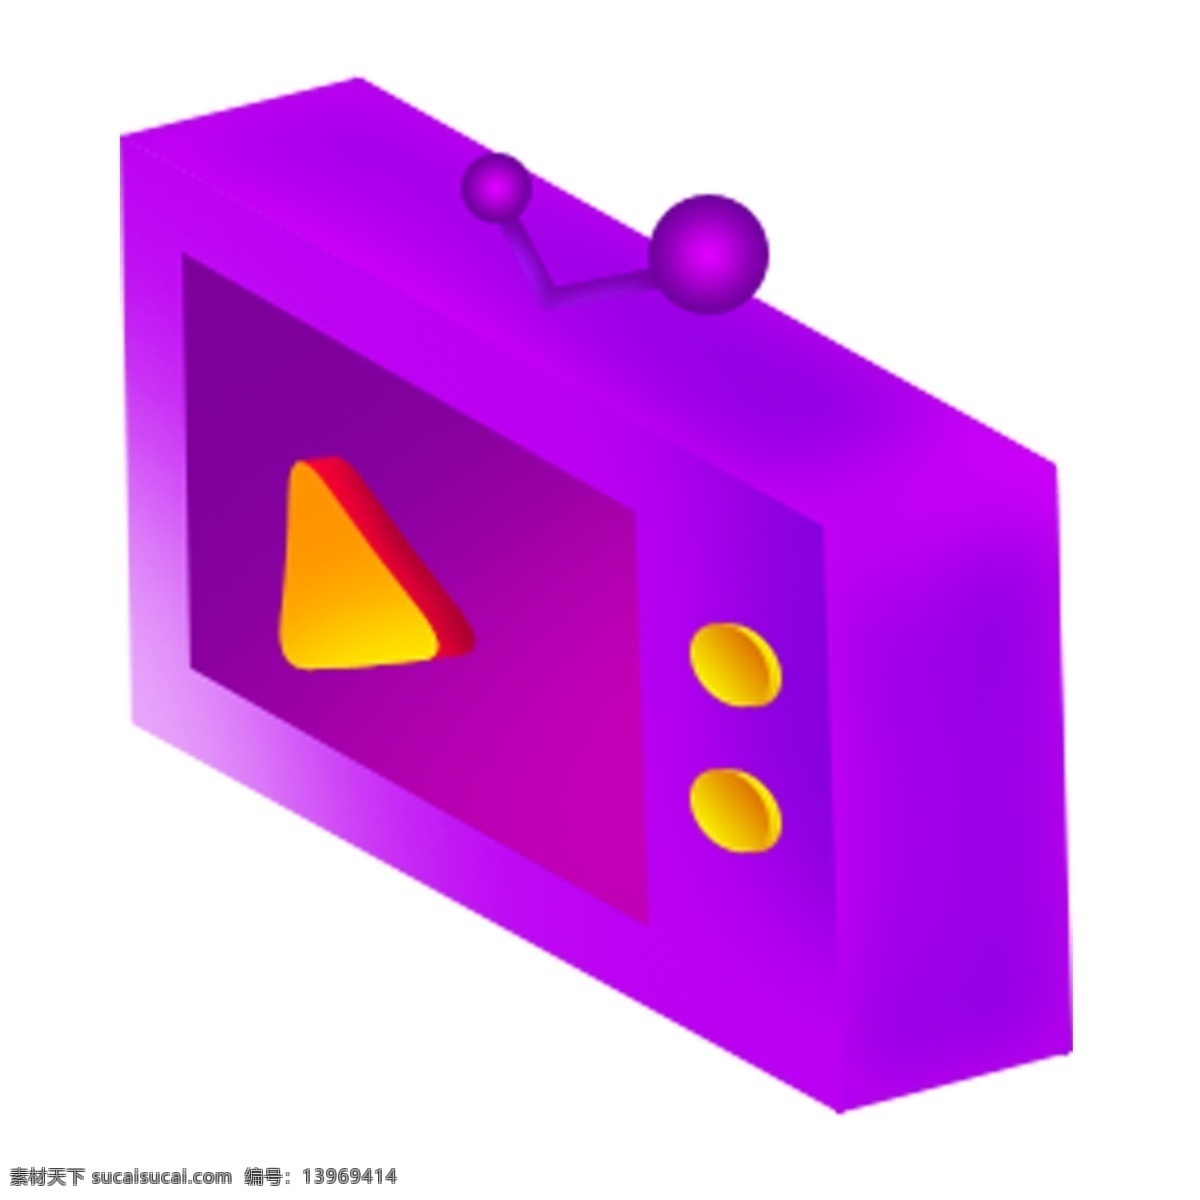 立体 紫色 电视 创意 黄色按钮 装饰素材